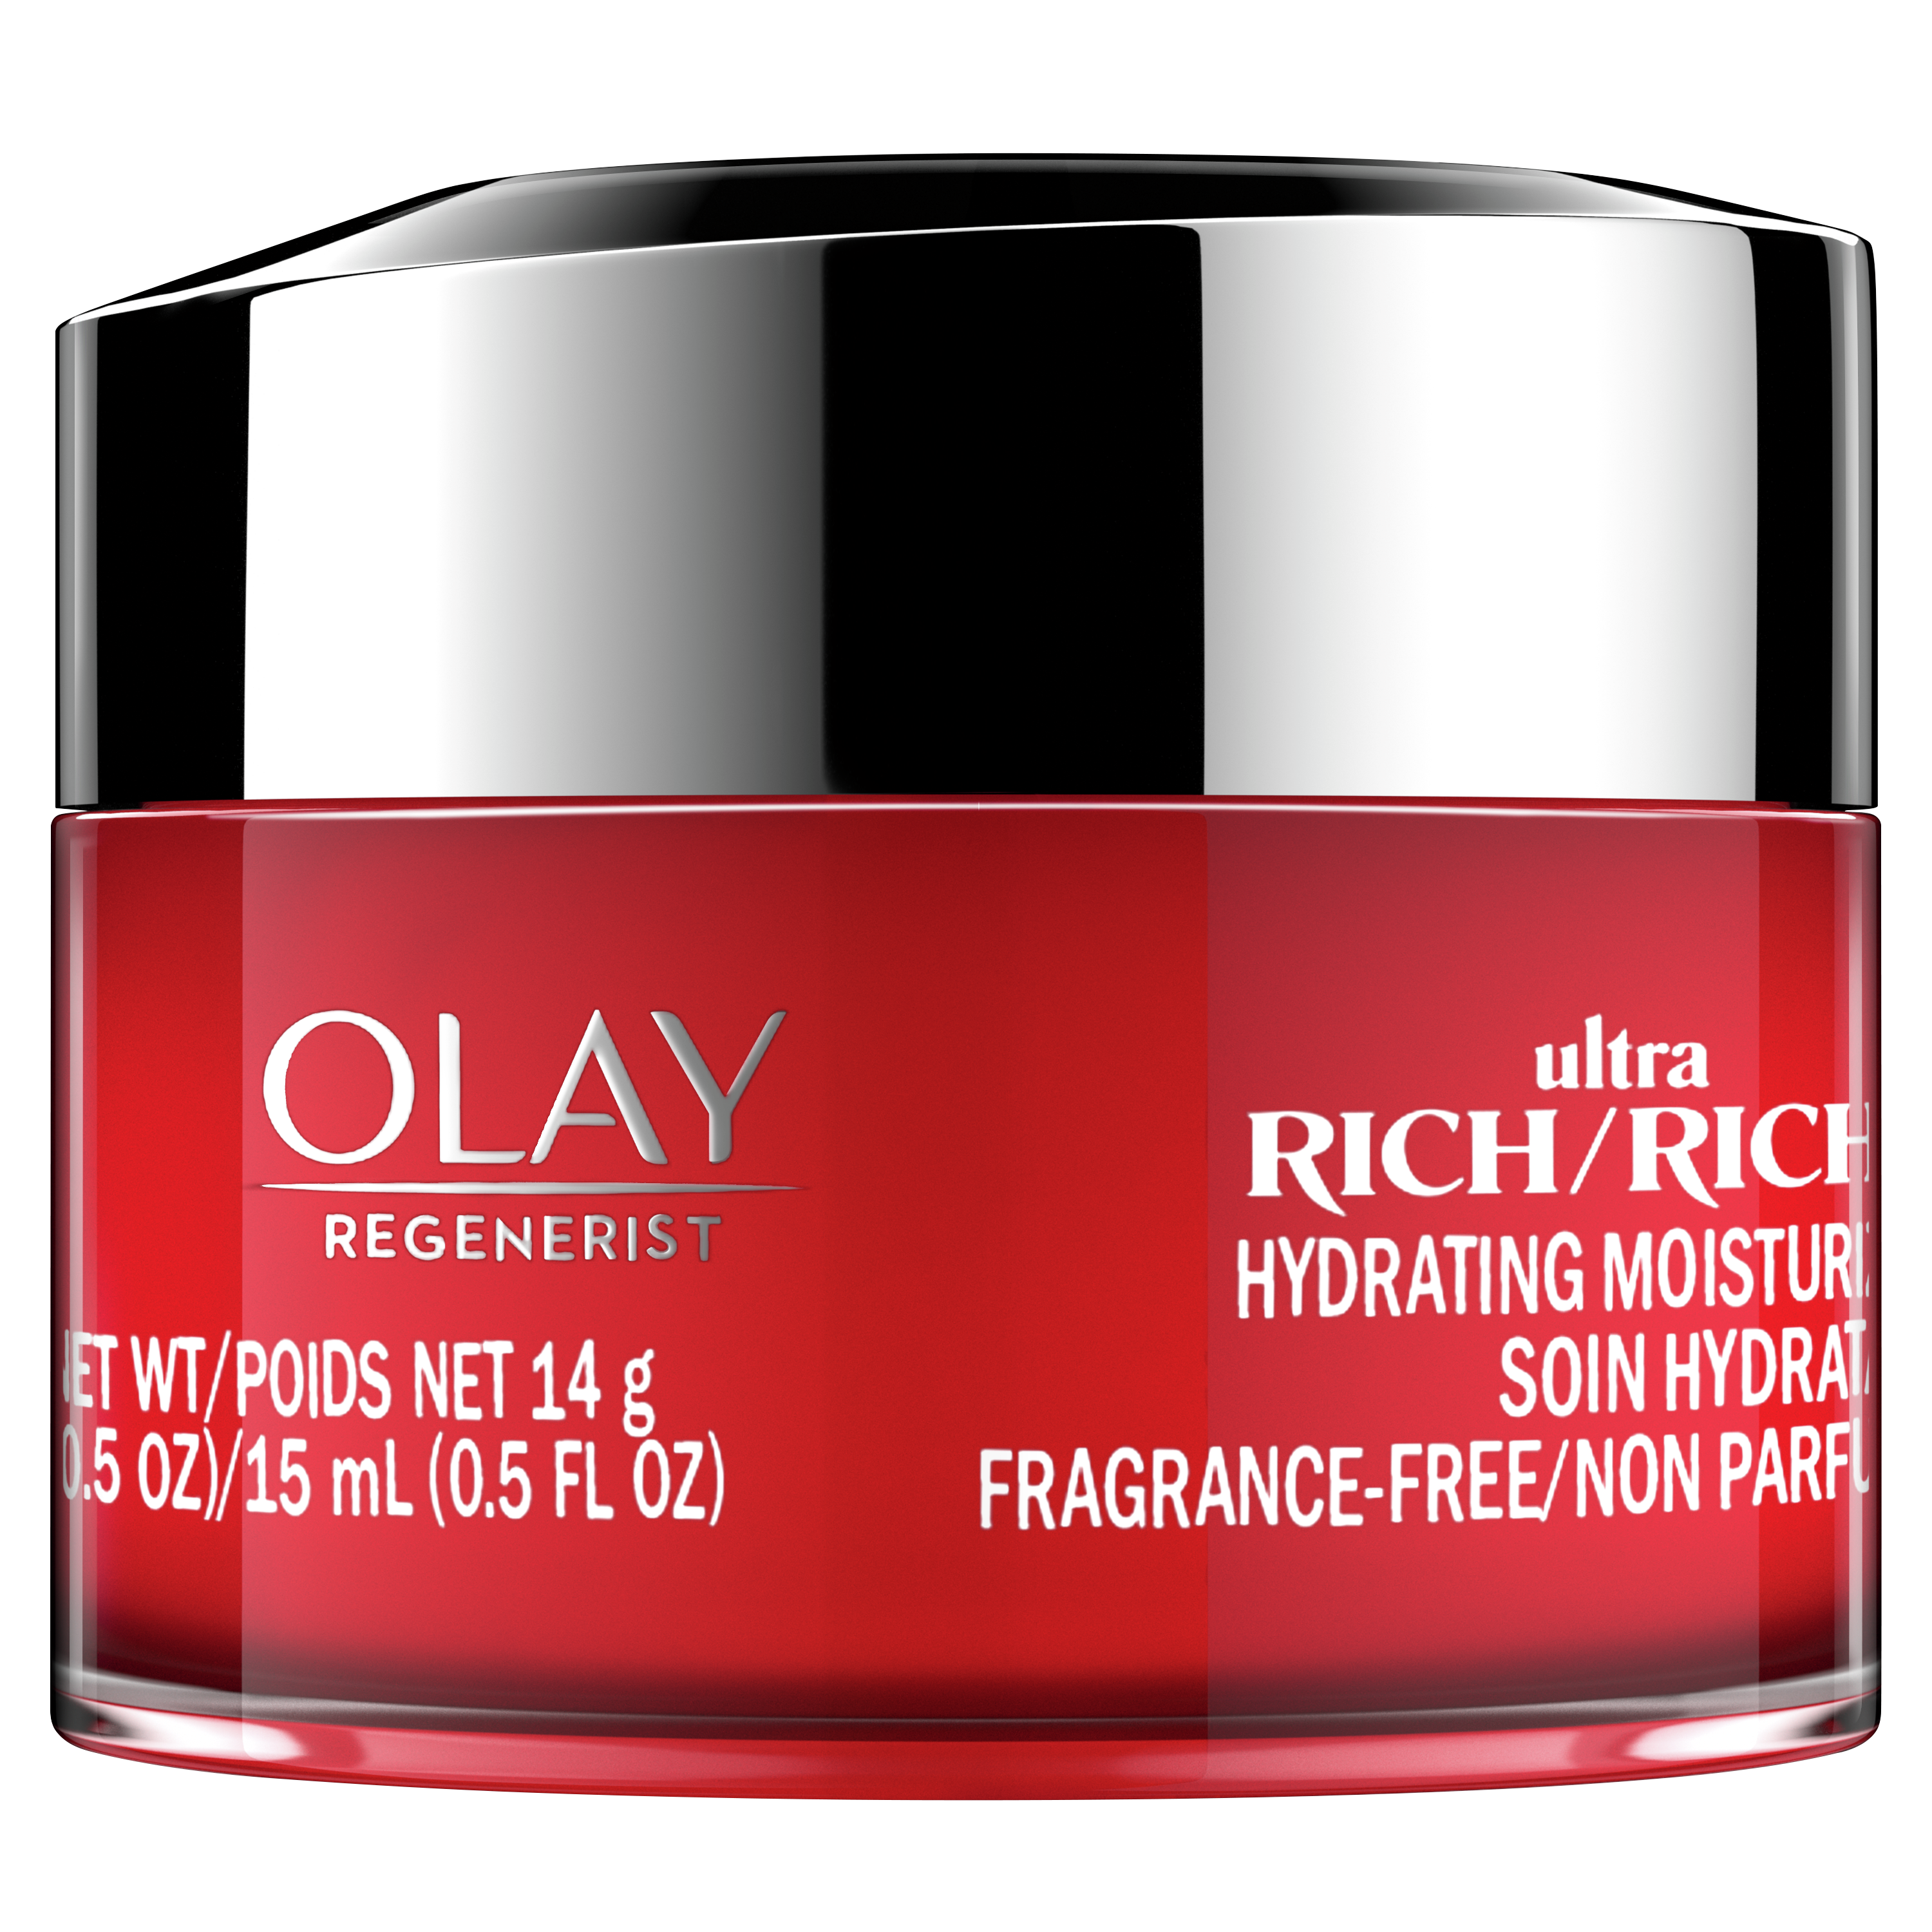 Hydratant pour le visage Olay Regenerist Ultra riche, non parfumé, format d’essai, 15 mL